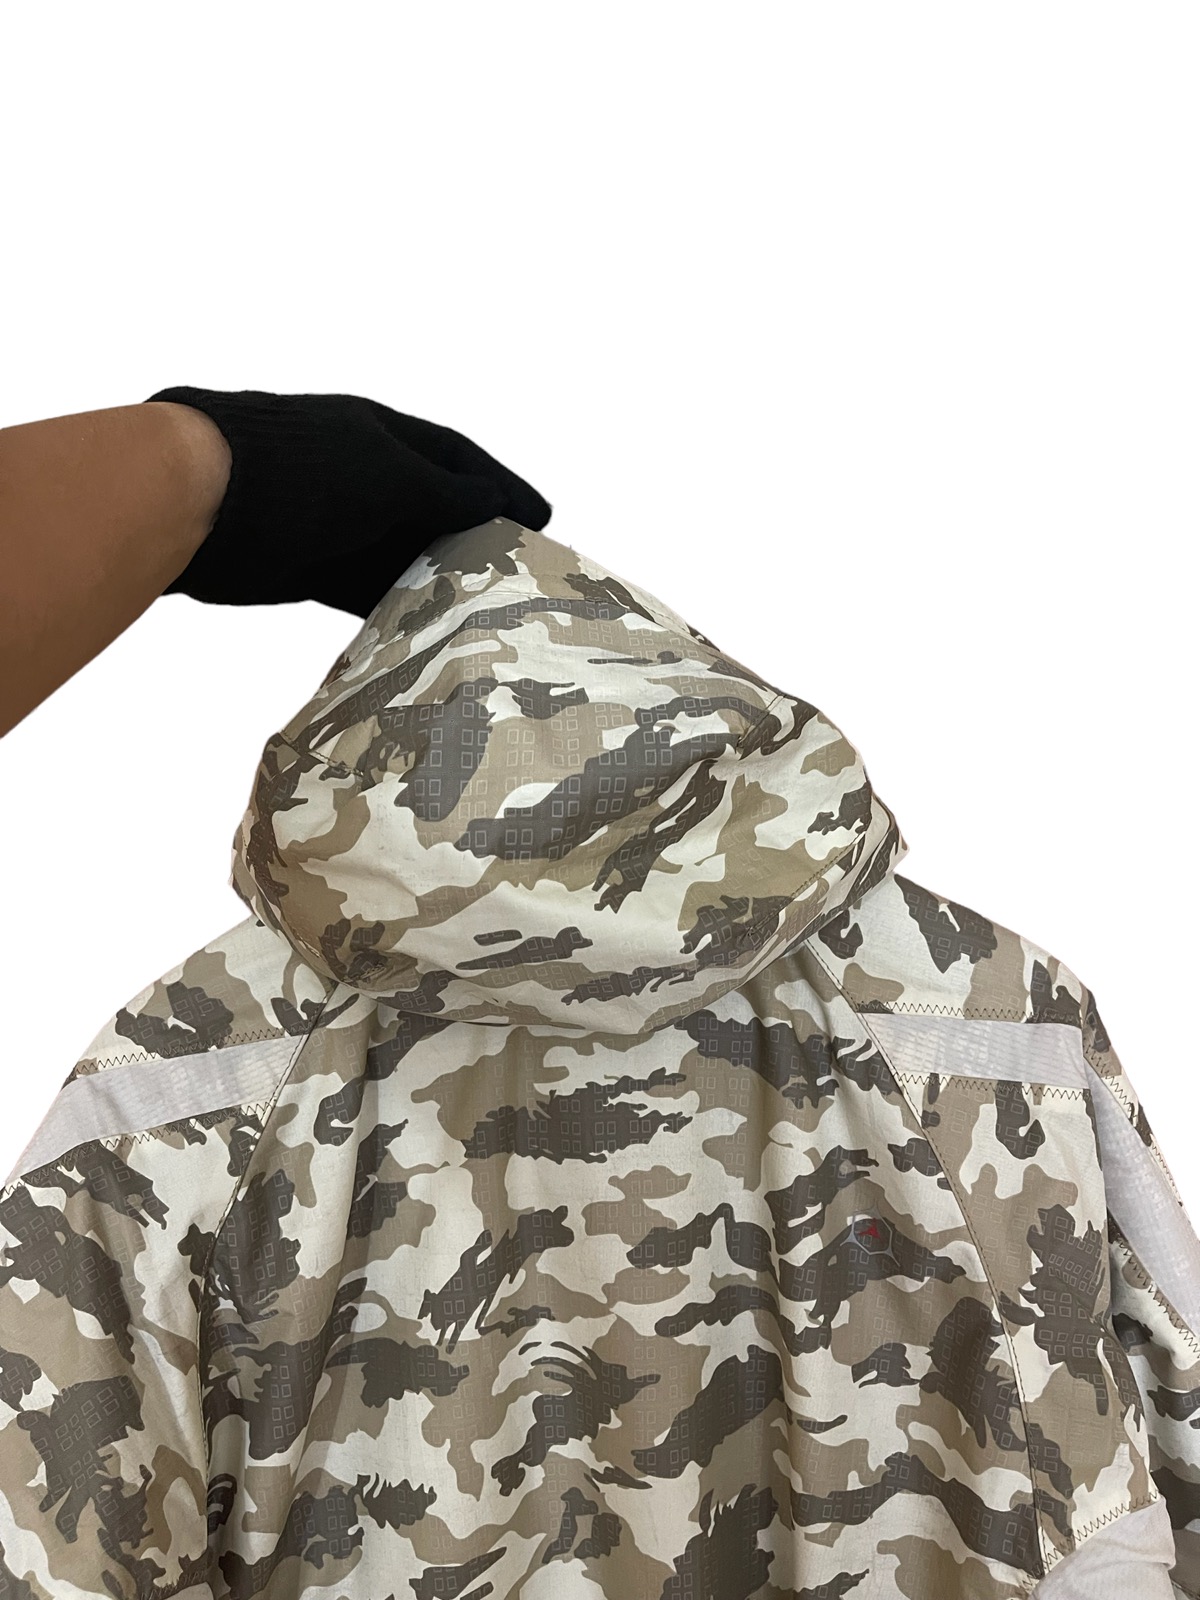 Asics jacket cold weather jacket - 14